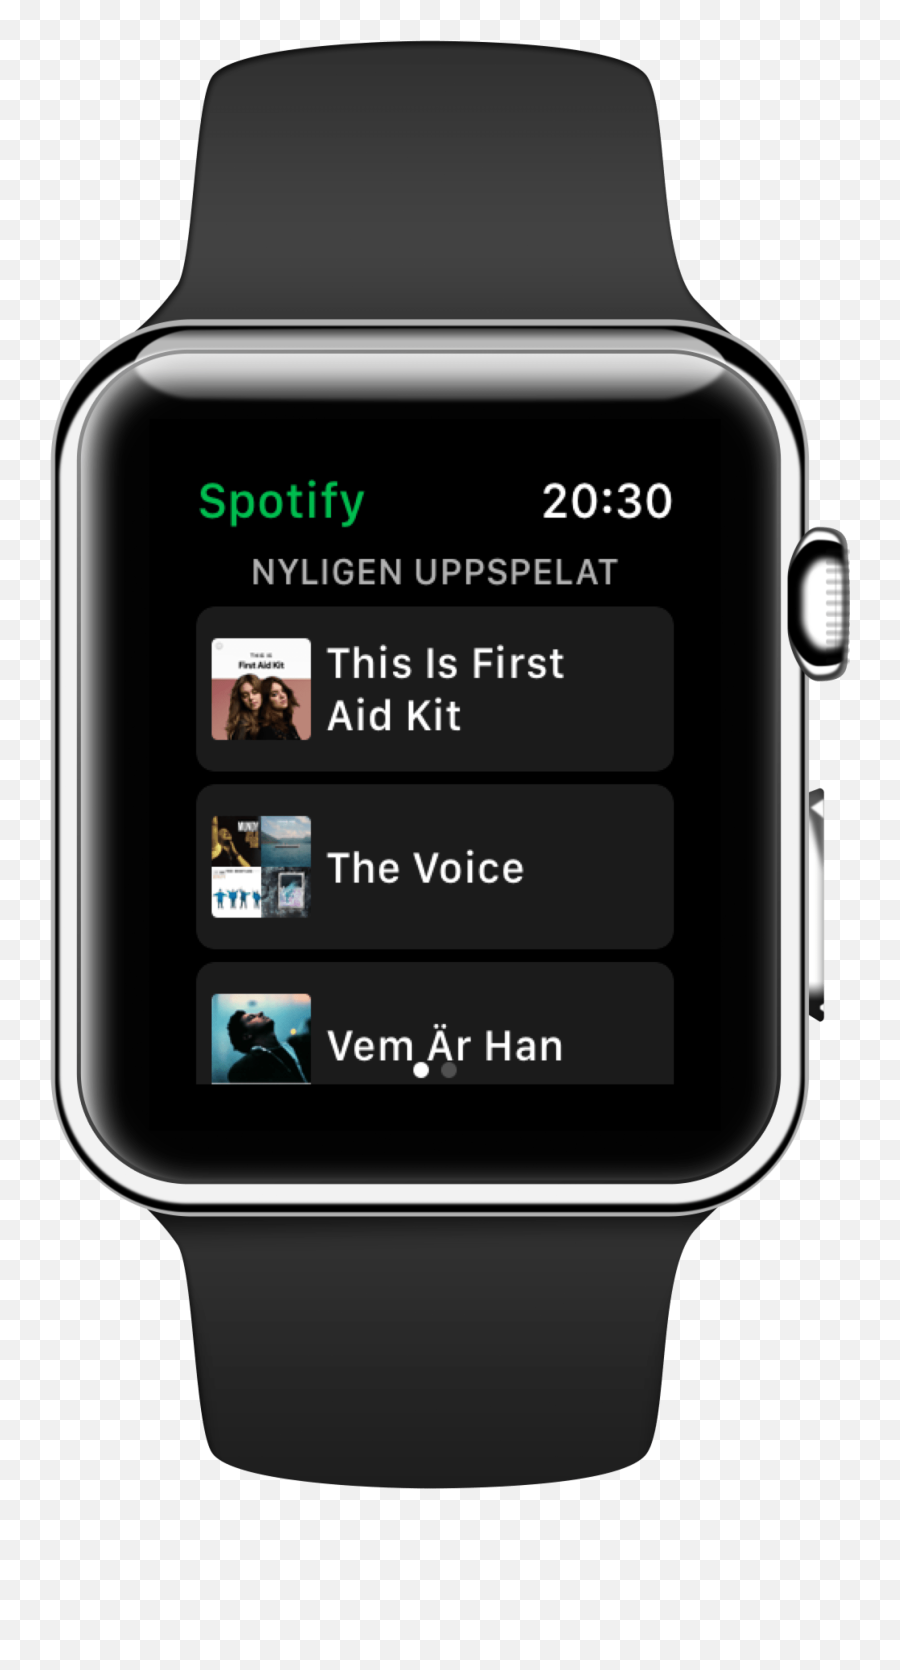 Ios Iphonesajtense - Part 37 Klocka Som Man Kan Lyssna På Musik Emoji,New Apple Emojis 12.1.3